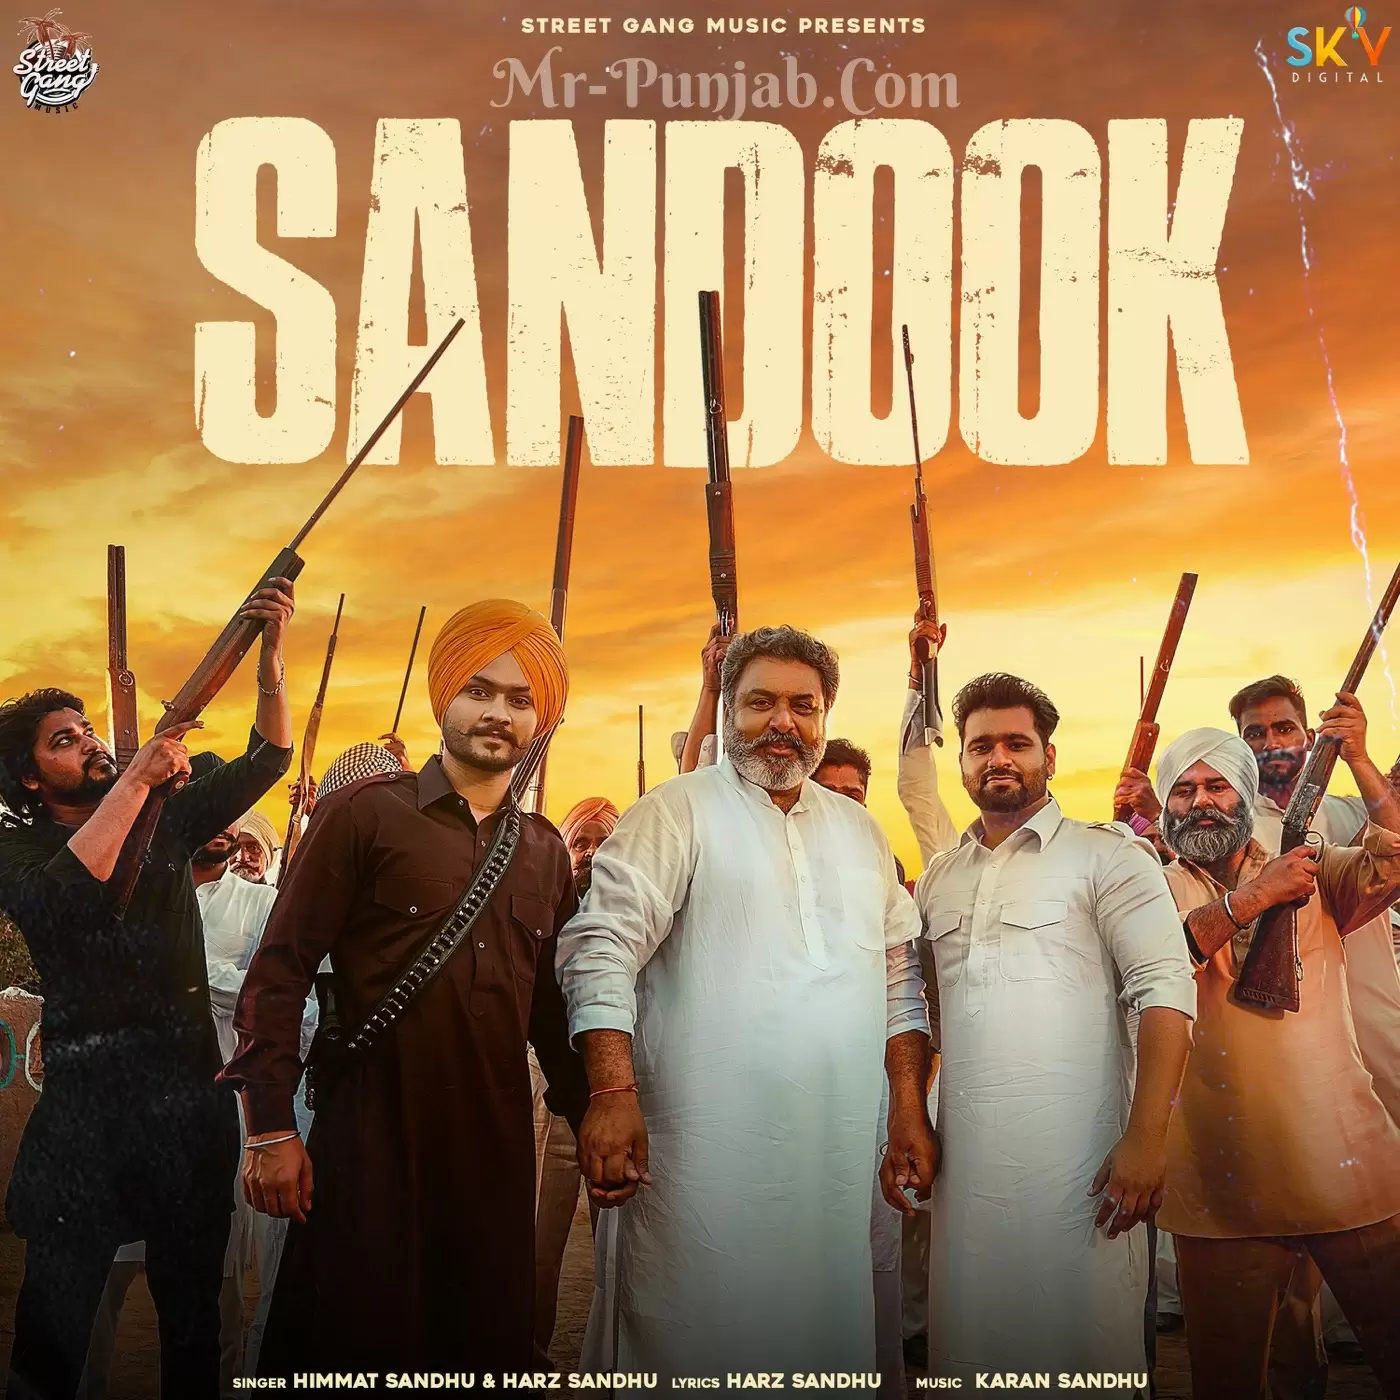 Sandook Himmat Sandhu Mp3 Download Song - Mr-Punjab